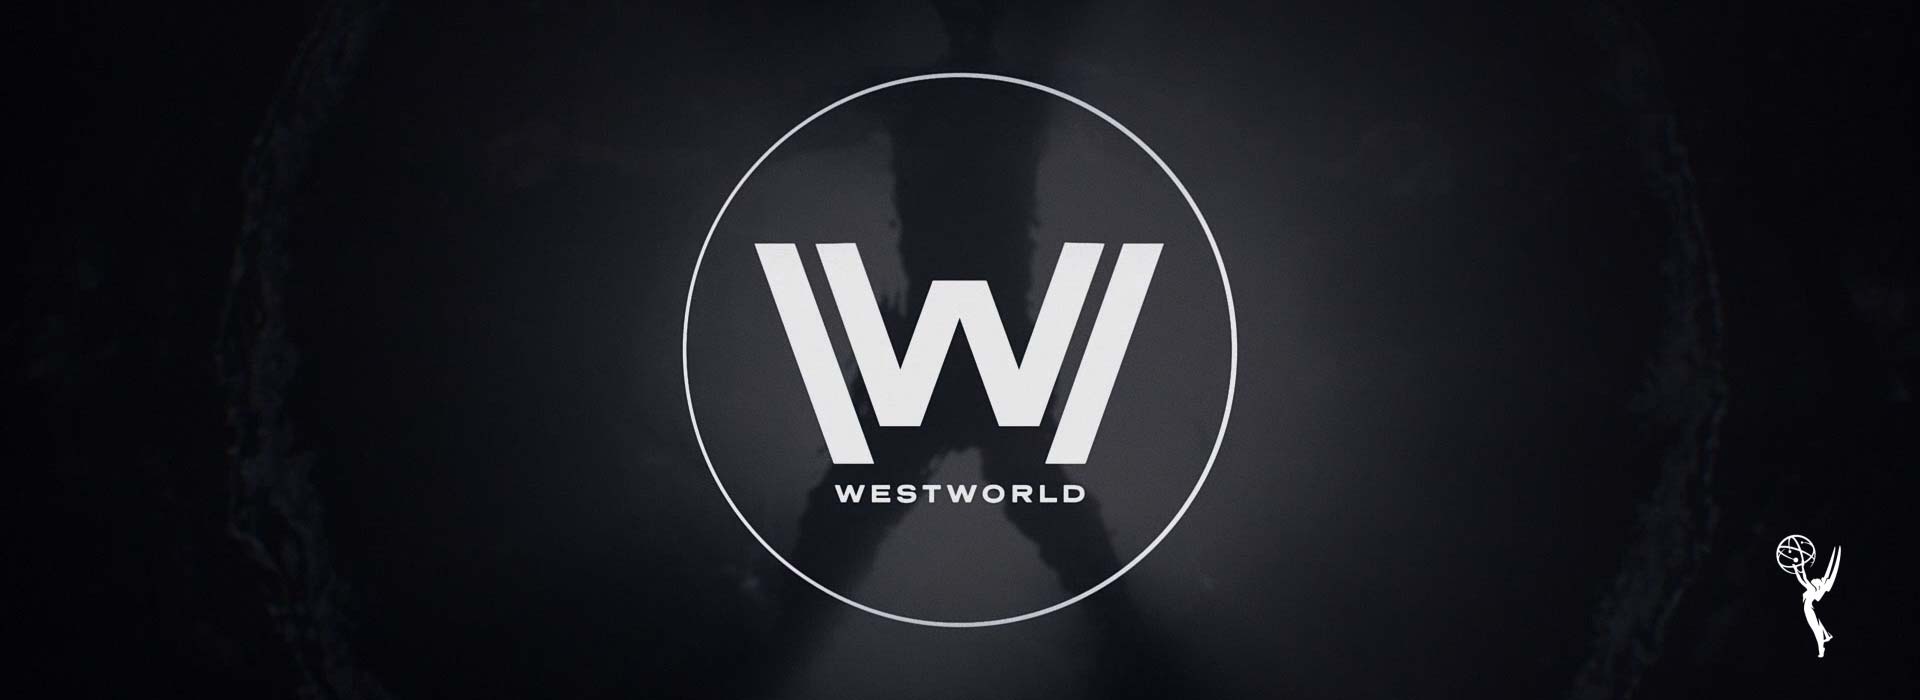 Westworld season 2